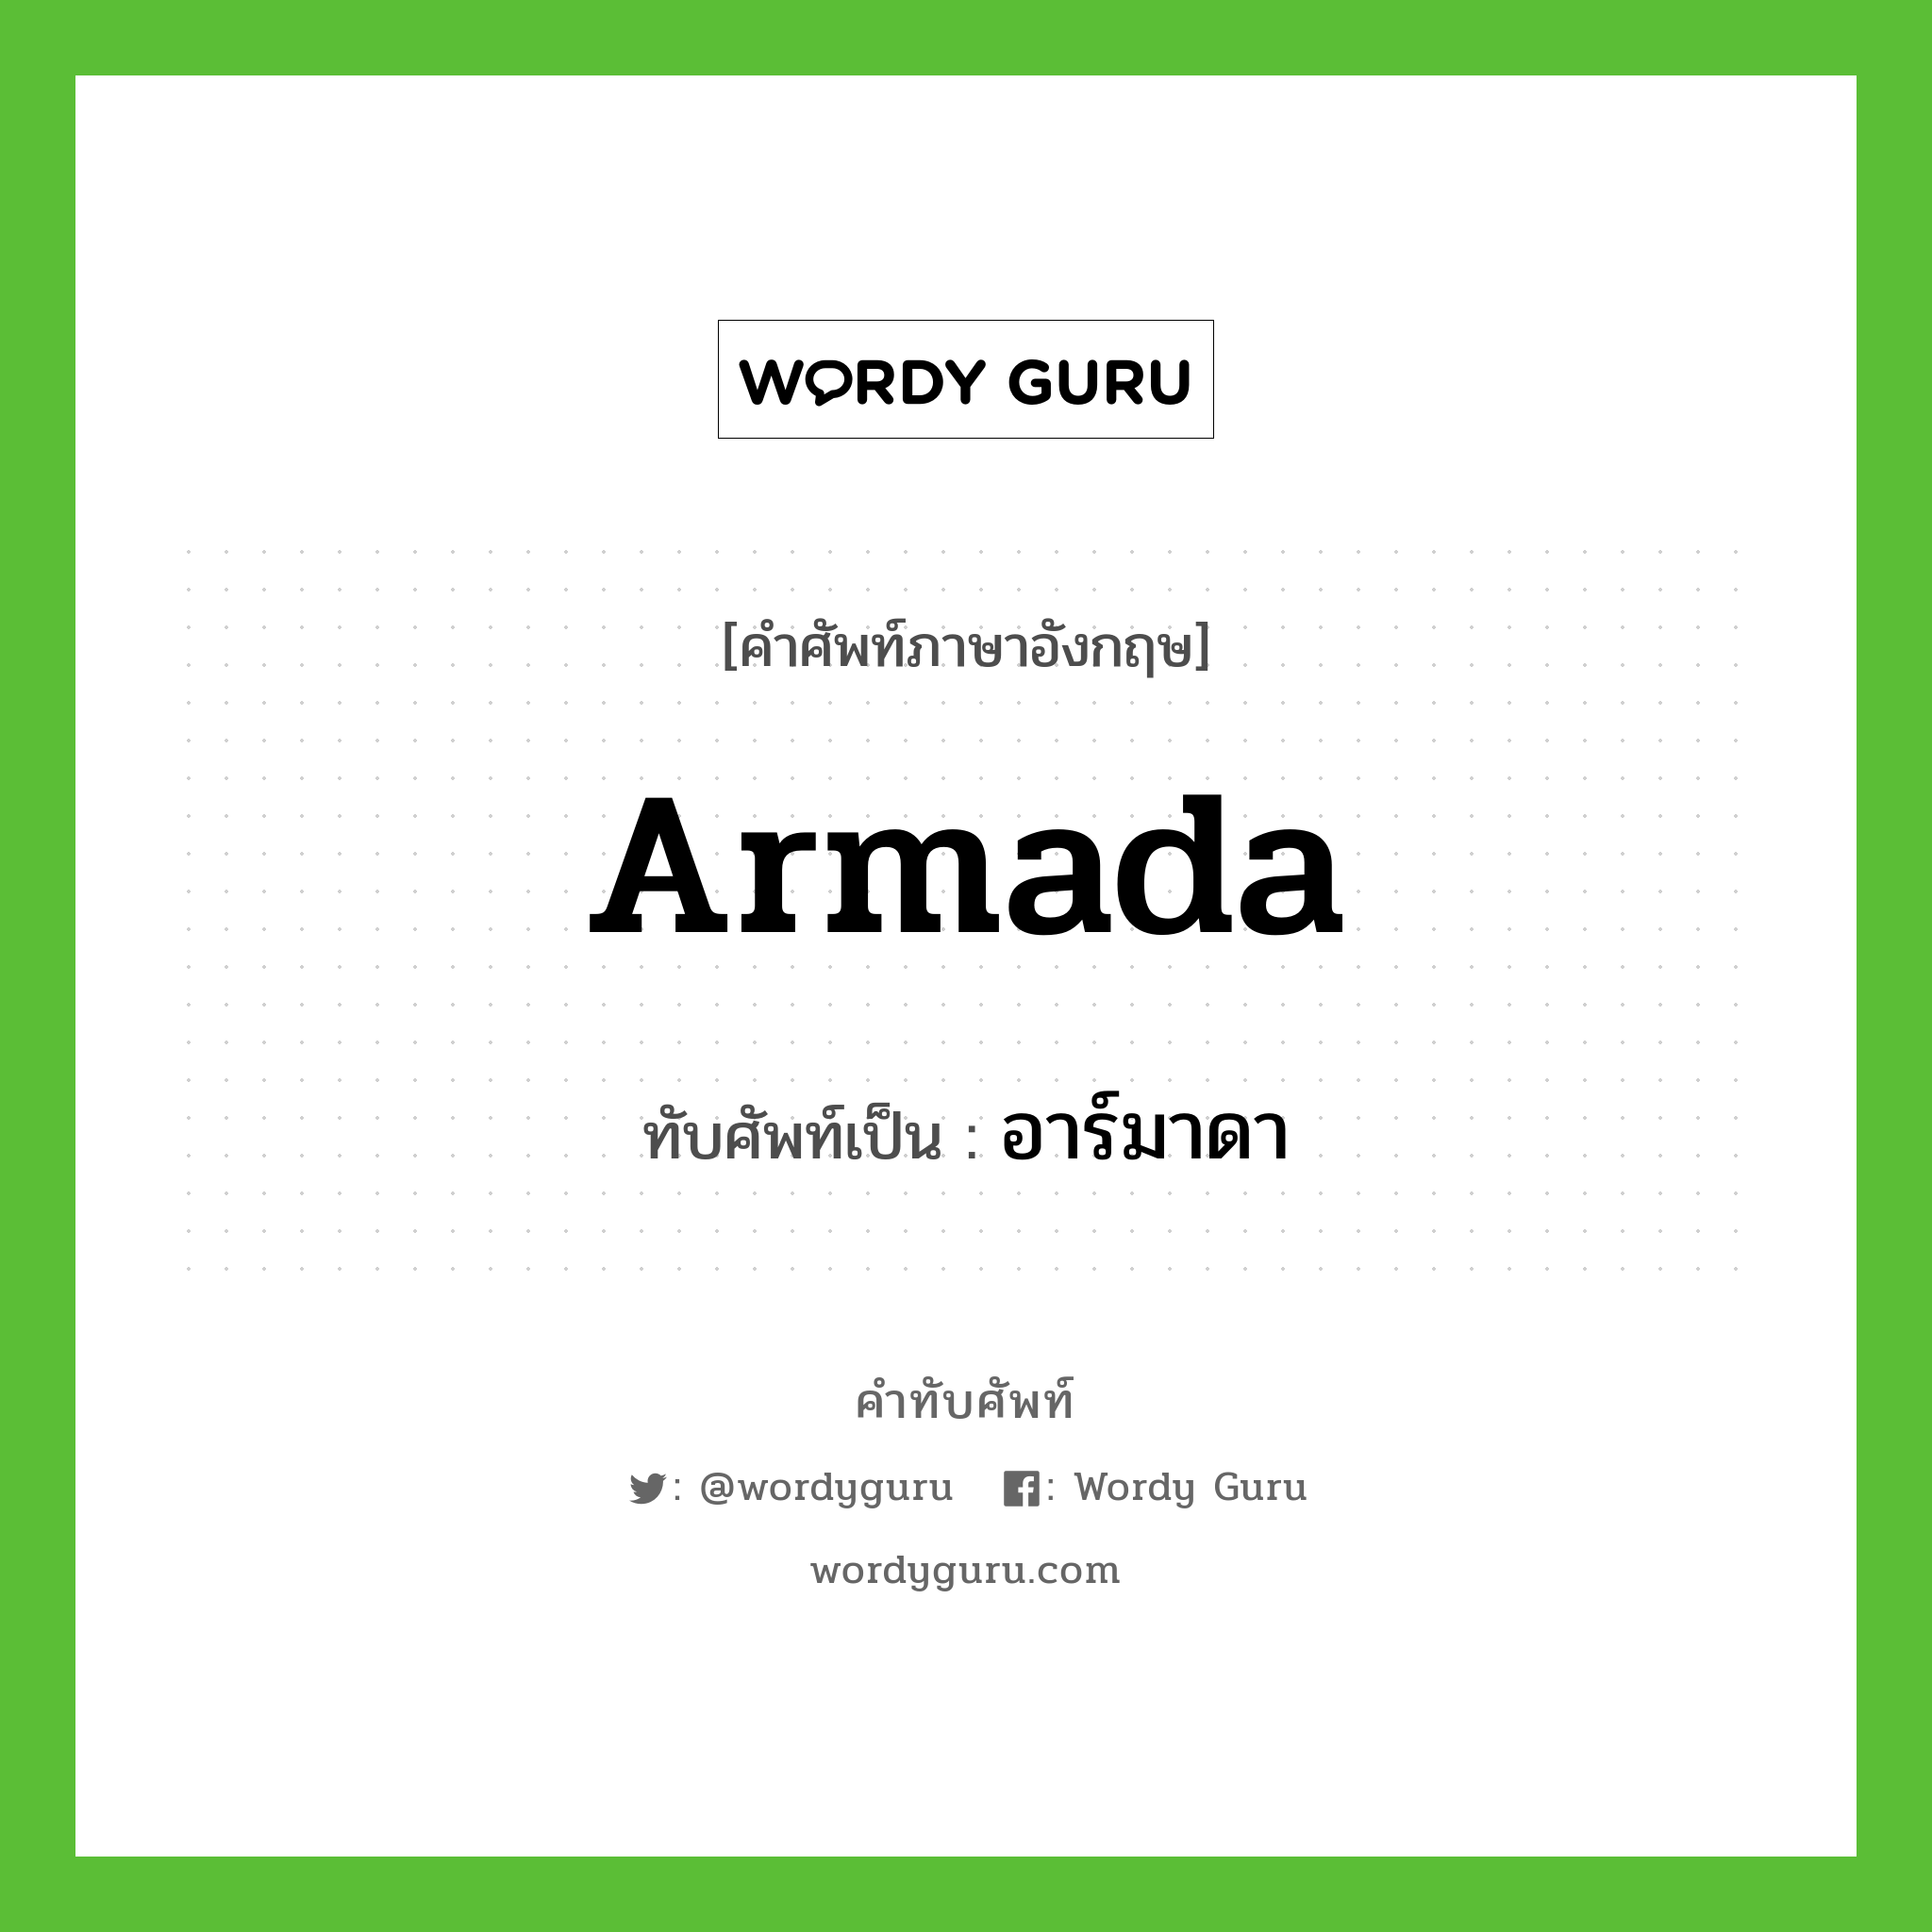 Armada เขียนเป็นคำไทยว่าอะไร?, คำศัพท์ภาษาอังกฤษ Armada ทับศัพท์เป็น อาร์มาดา